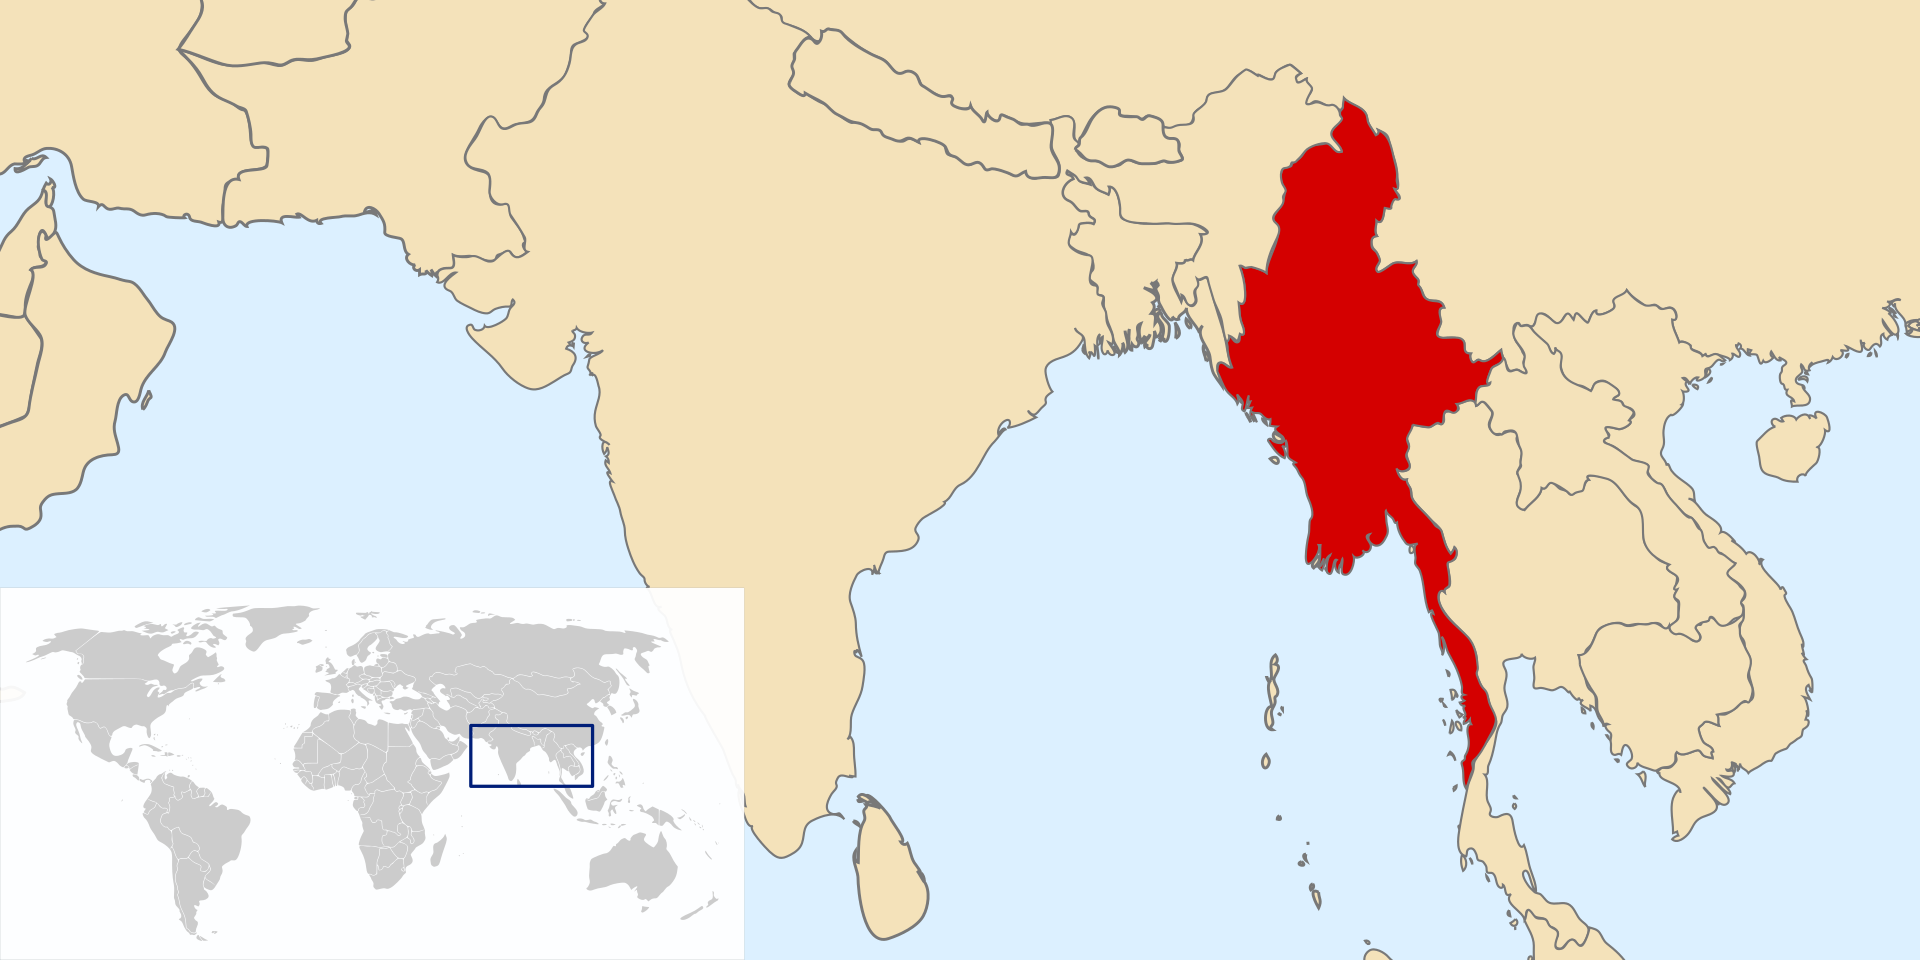 Myanmari Sprachraum